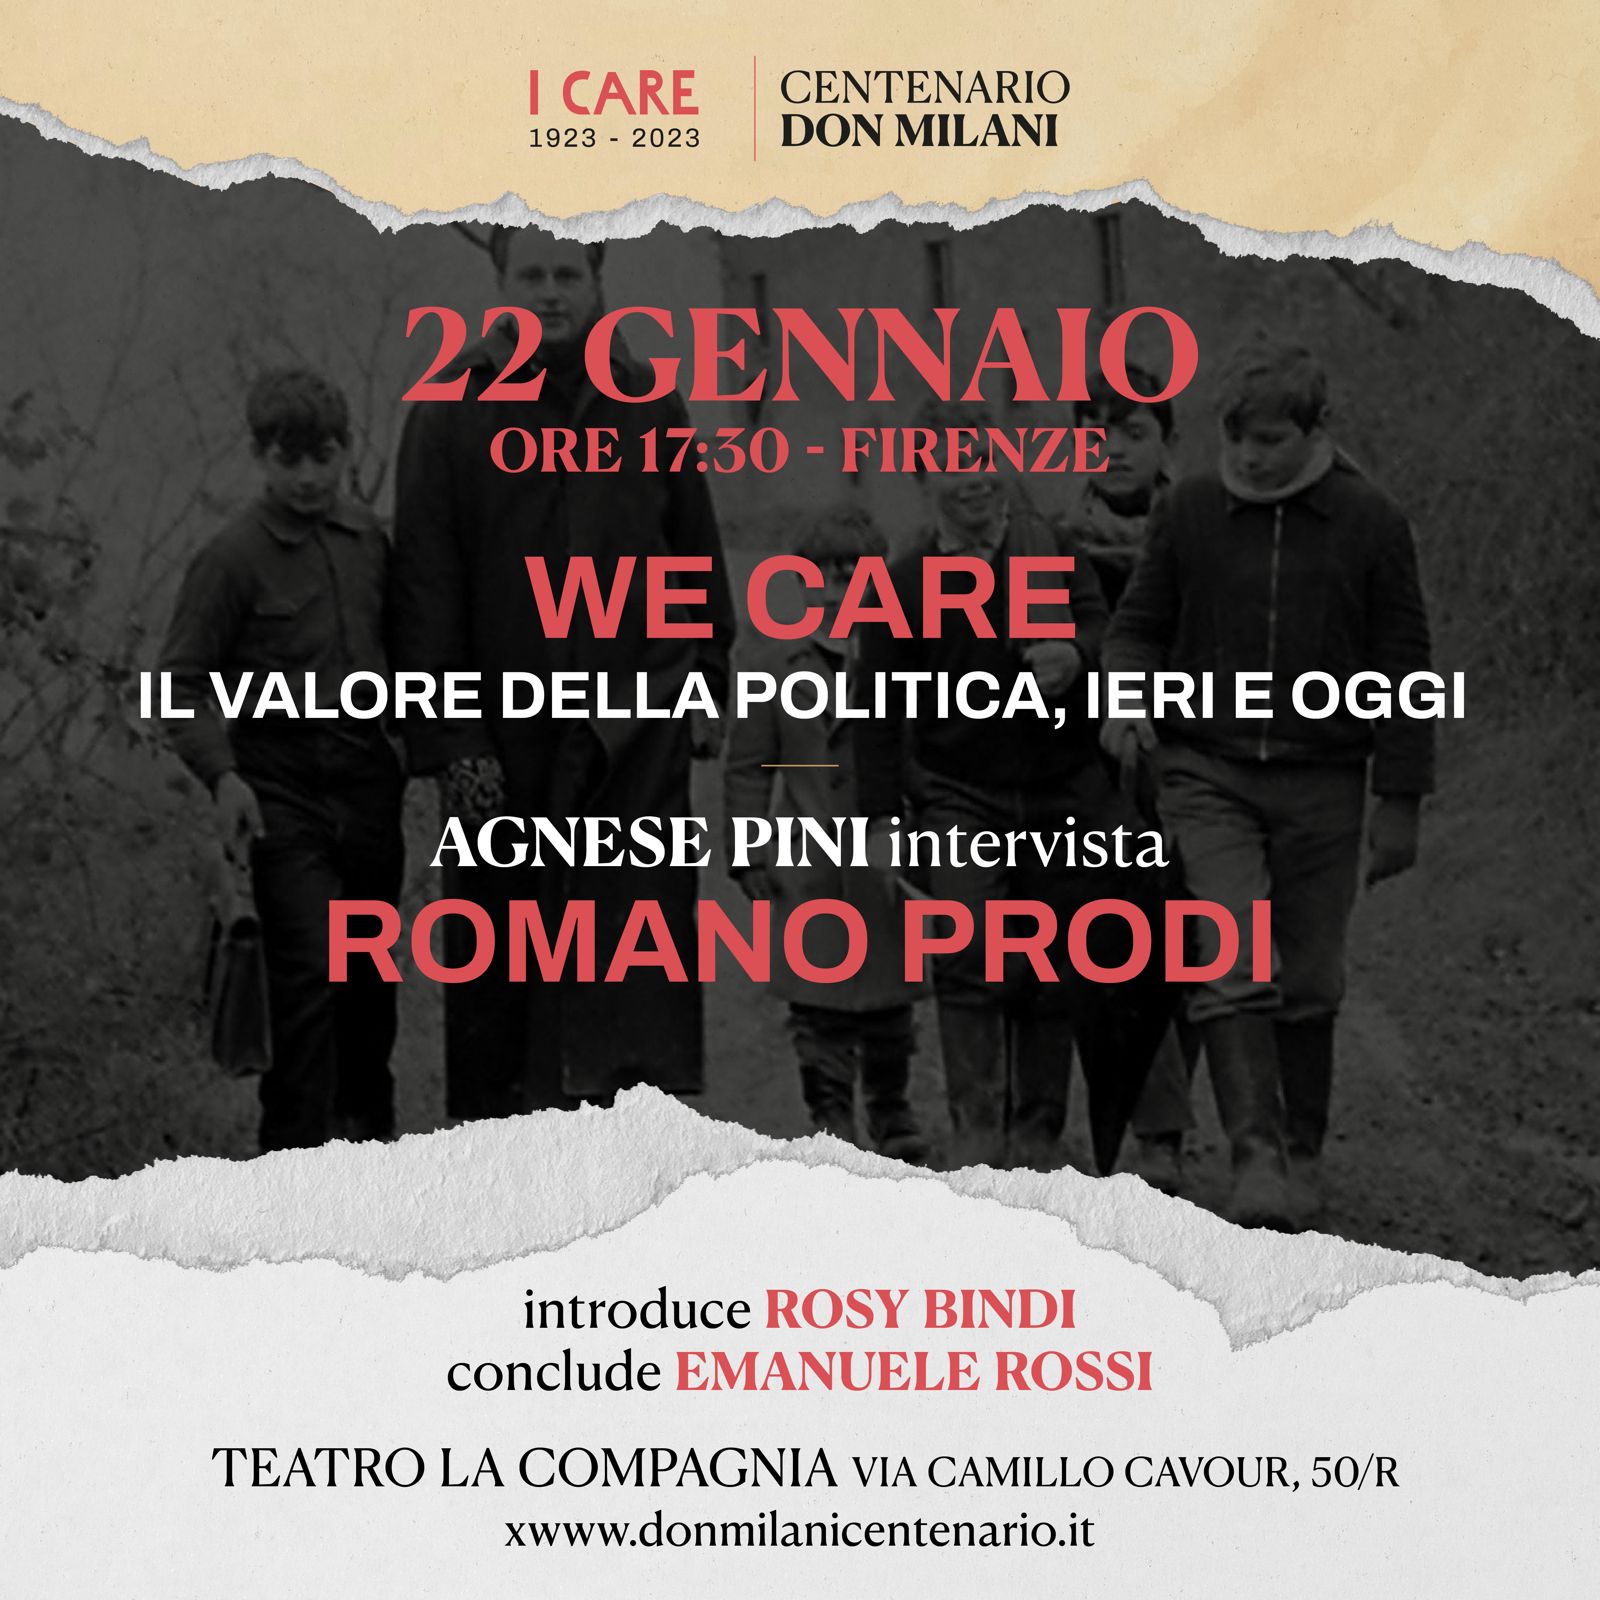 Locandina Centenario Don Milani. "We Care, il valore della politica, ieri e oggi": Agnese Pini intervista Romano Prodi